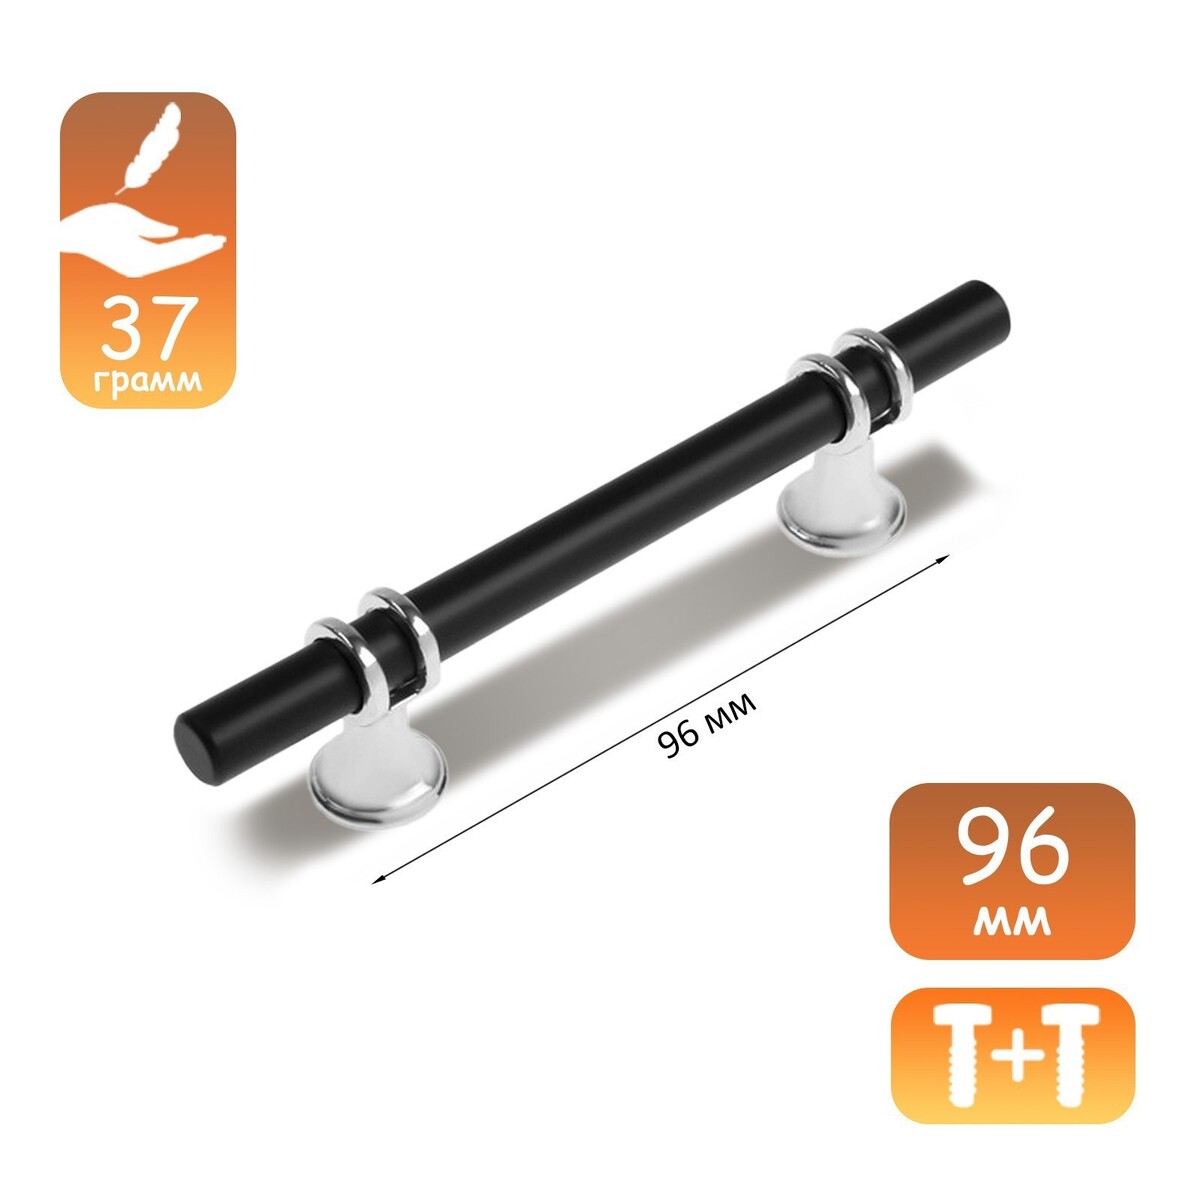 Ручка скоба cappio, м/о 96 мм, d=12 mm, пластик, цвет хром/черный ручка кнопка cappio 35х35 пластик хром